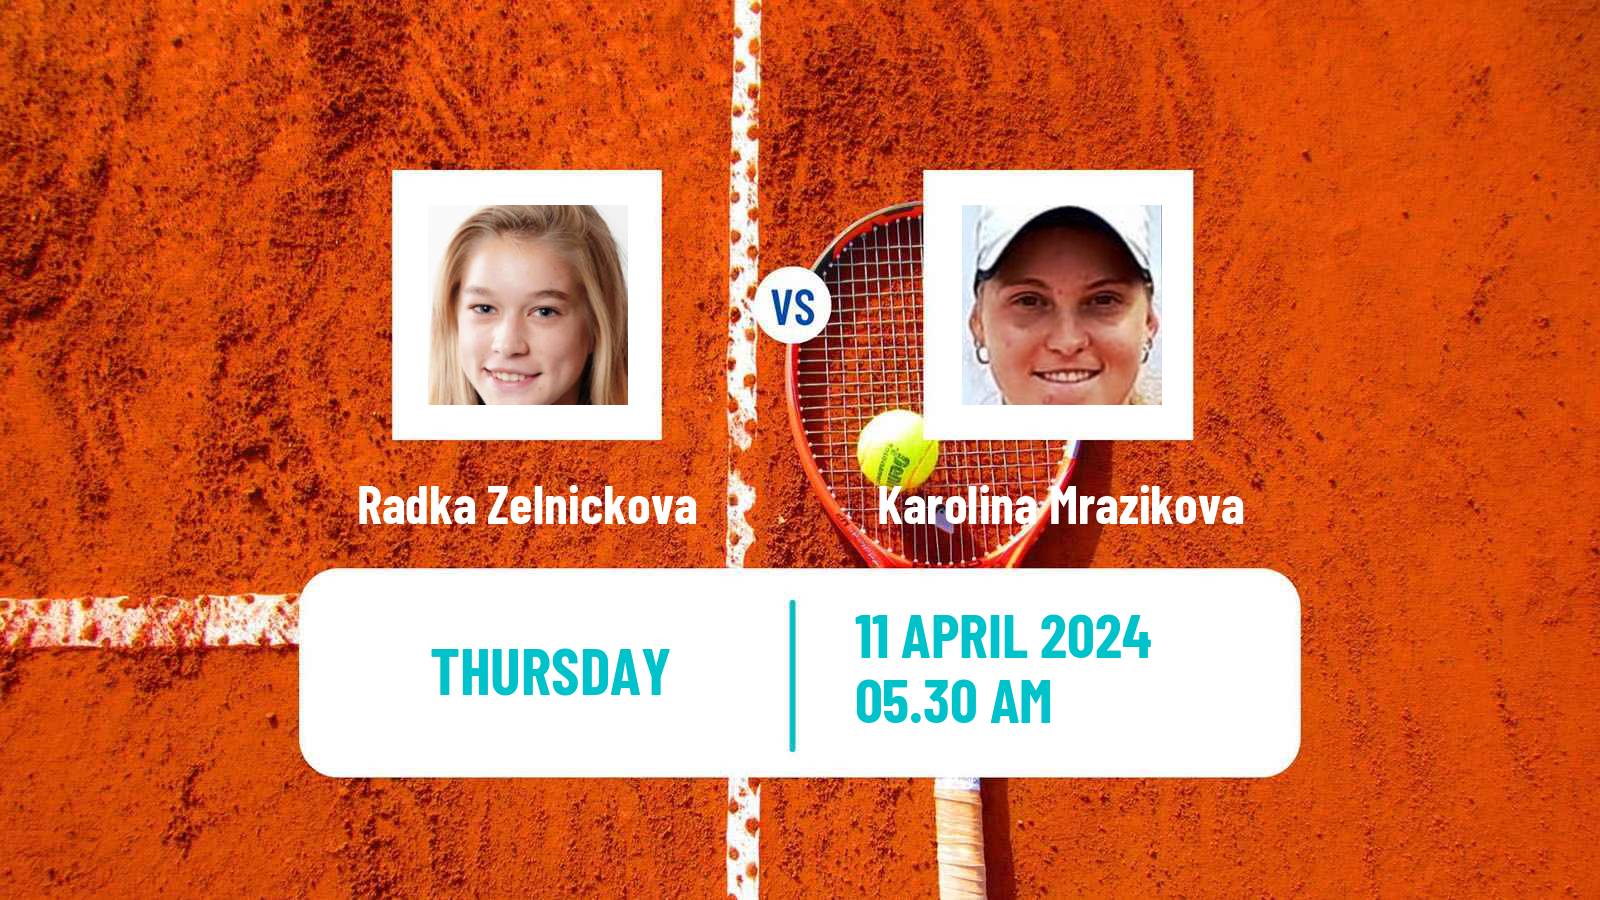 Tennis ITF W15 Antalya 9 Women Radka Zelnickova - Karolina Mrazikova